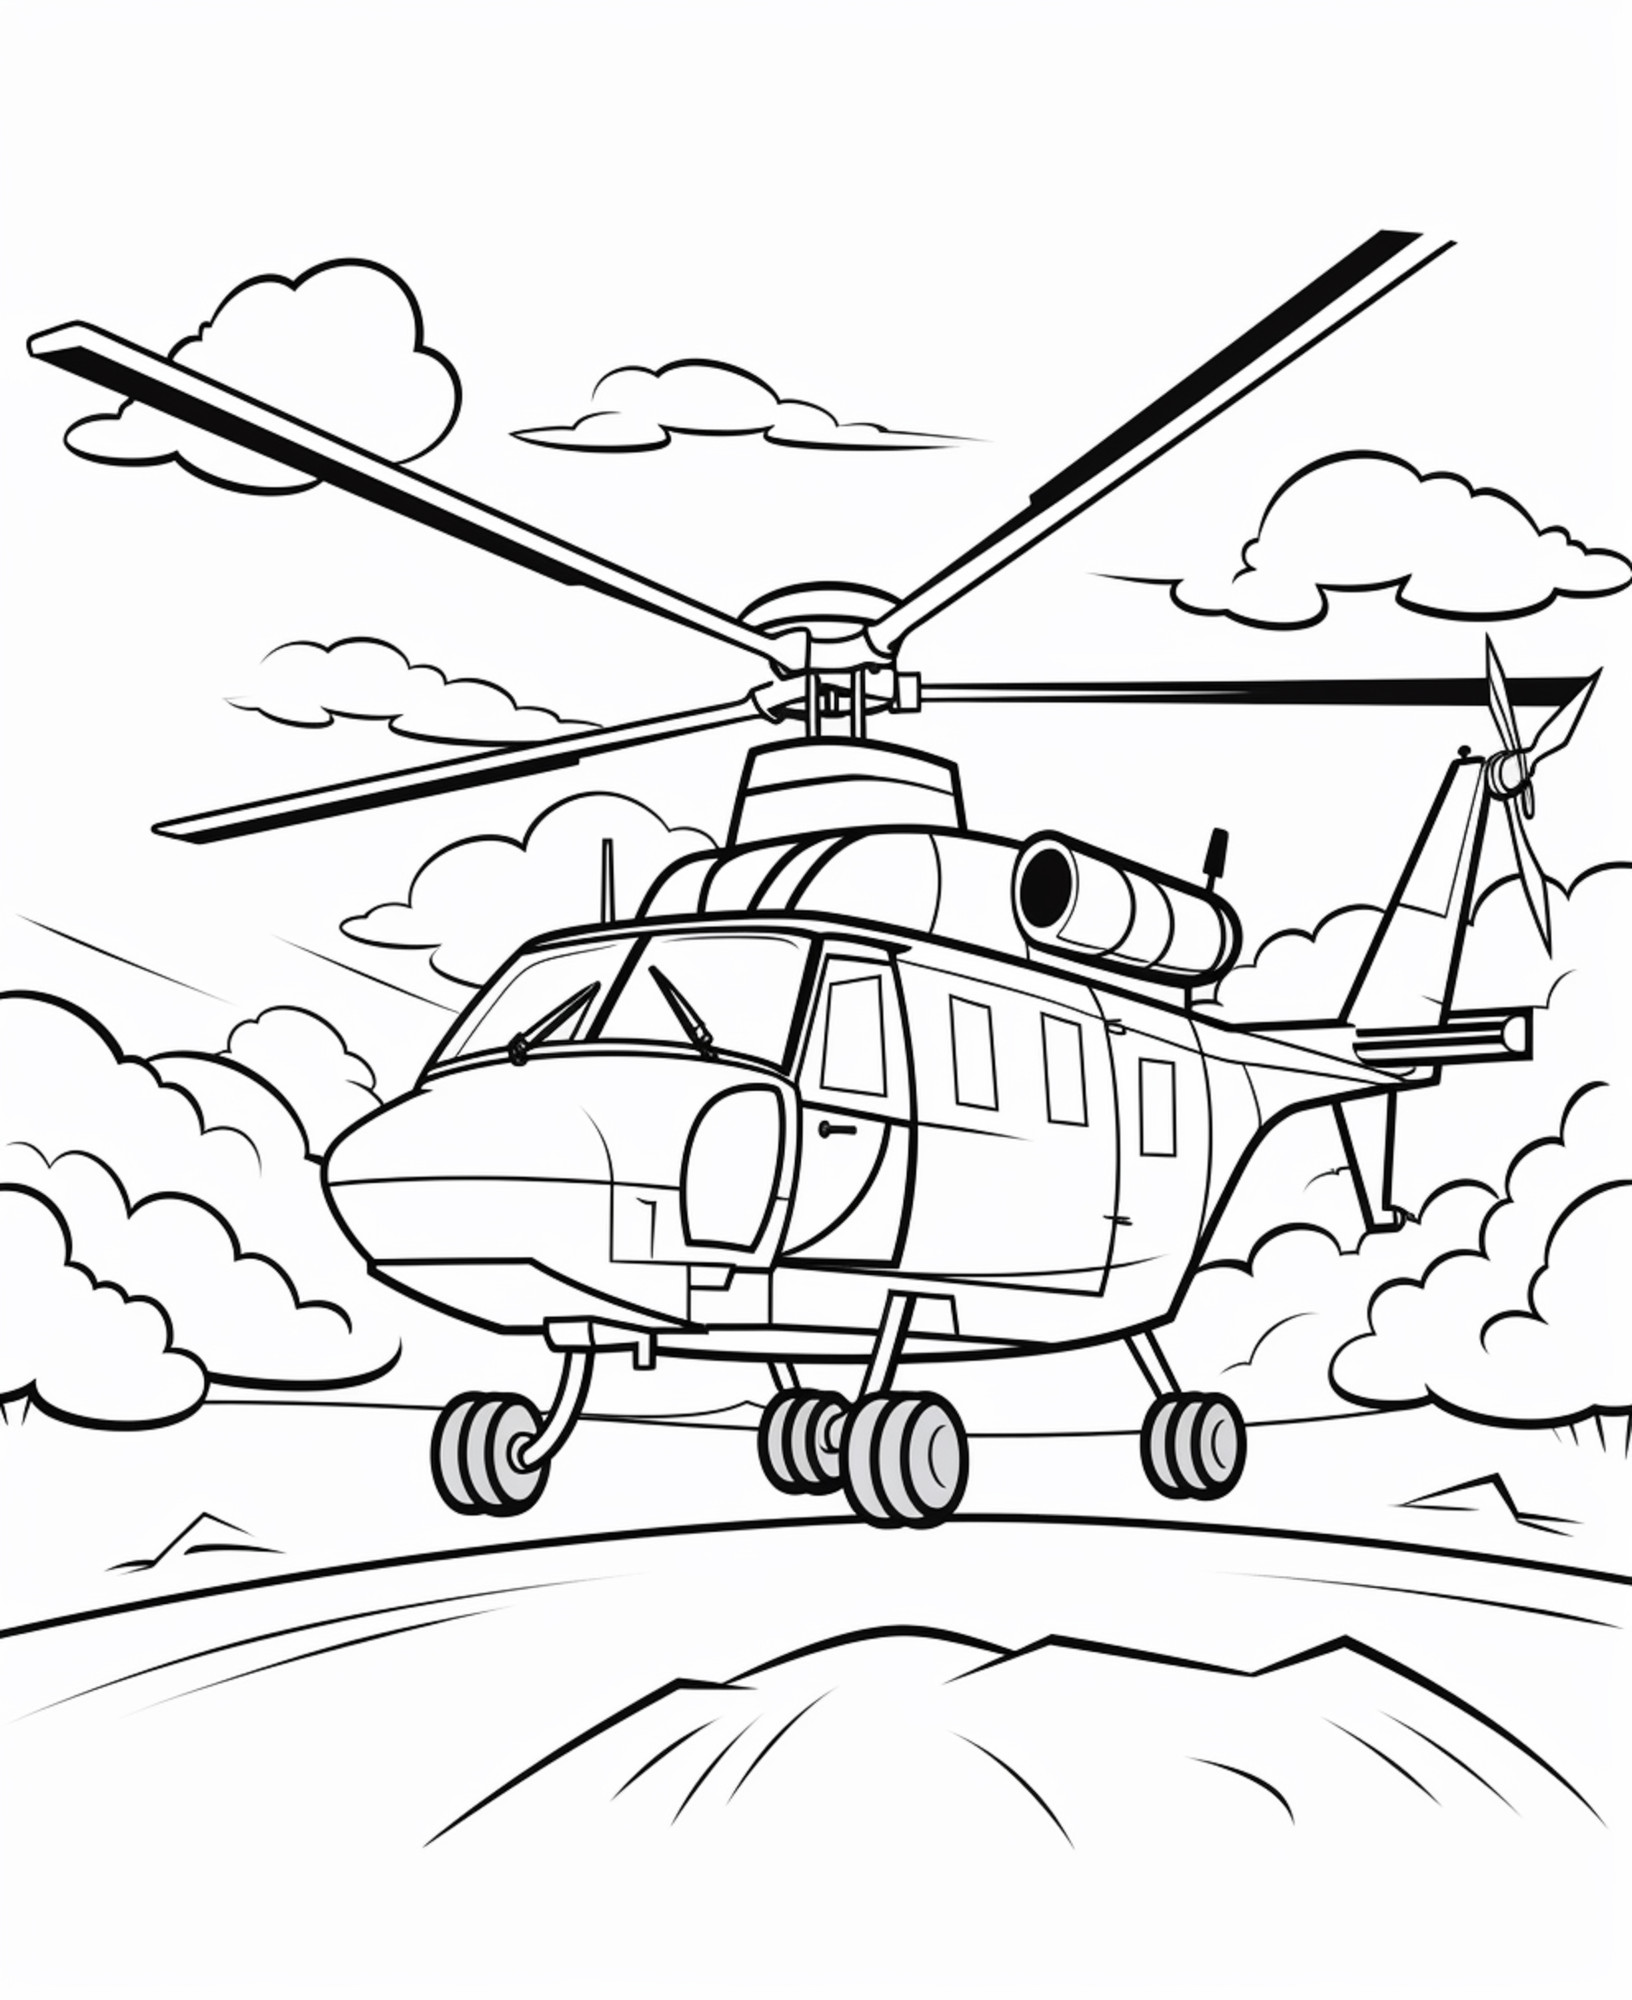 Раскраска для детей: вертолет «Крылатые мечты»